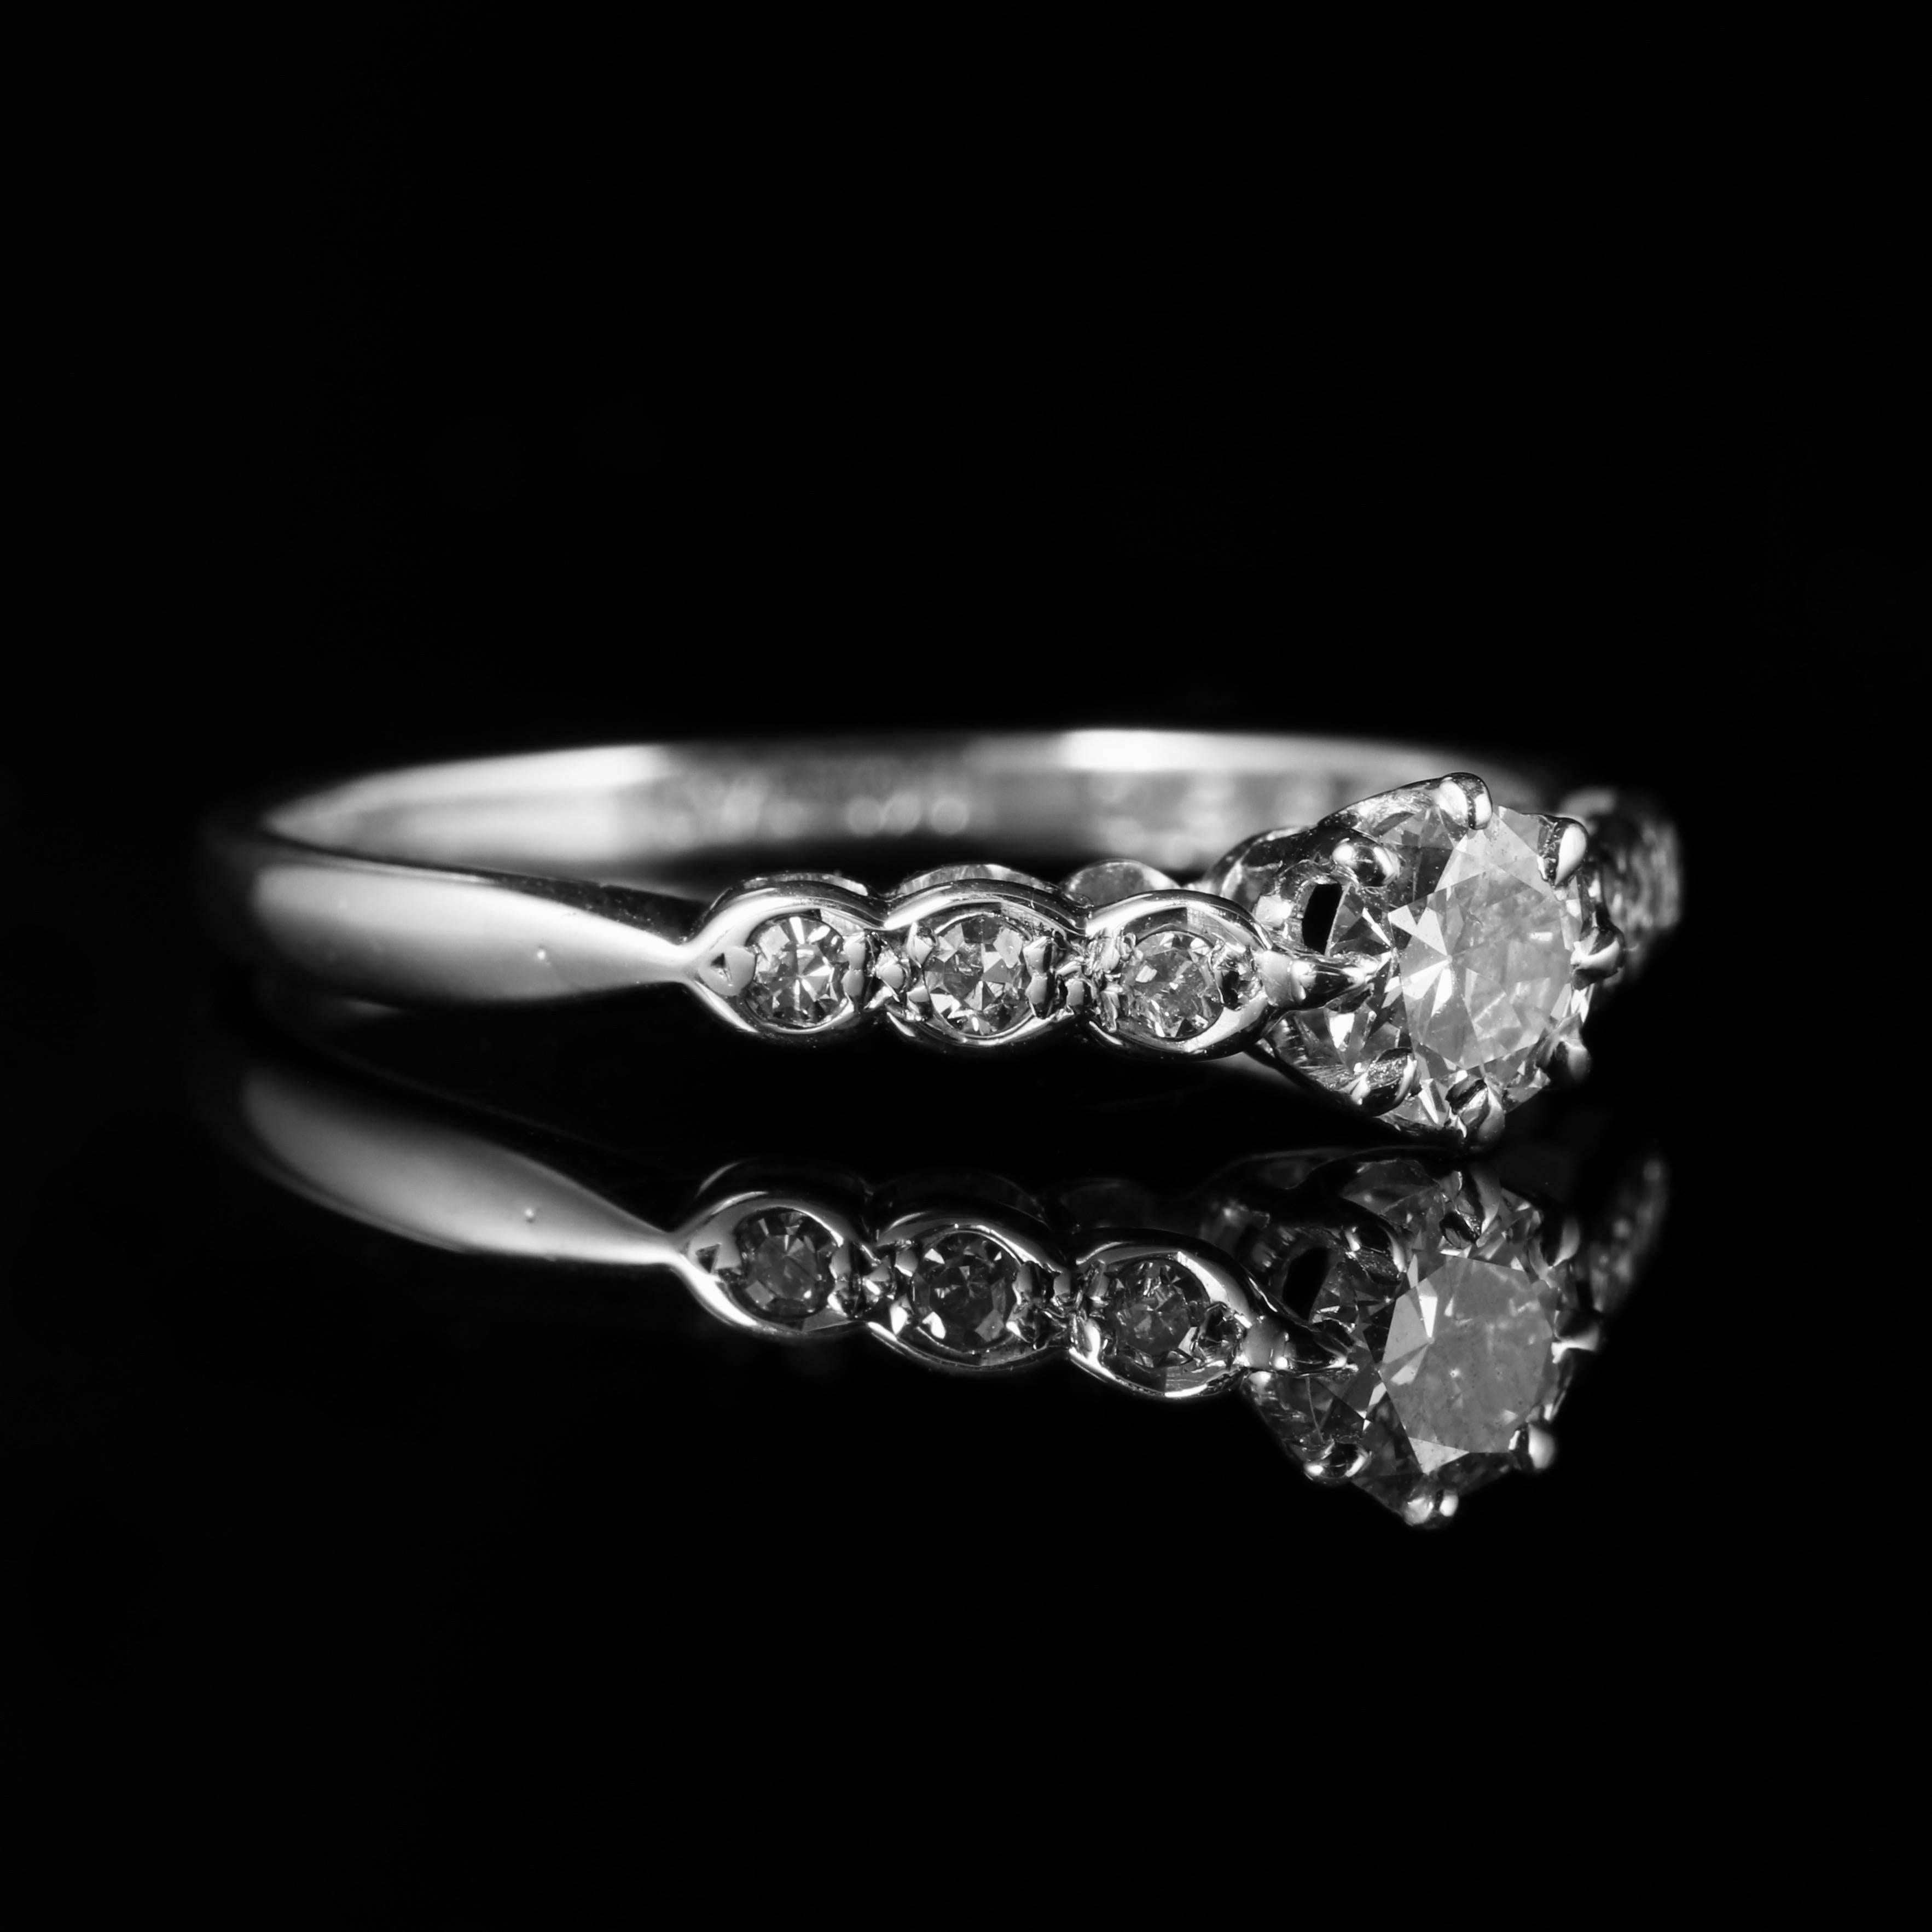 Women's Antique Edwardian Diamond Engagement Ring 18 Carat White Gold, circa 1915